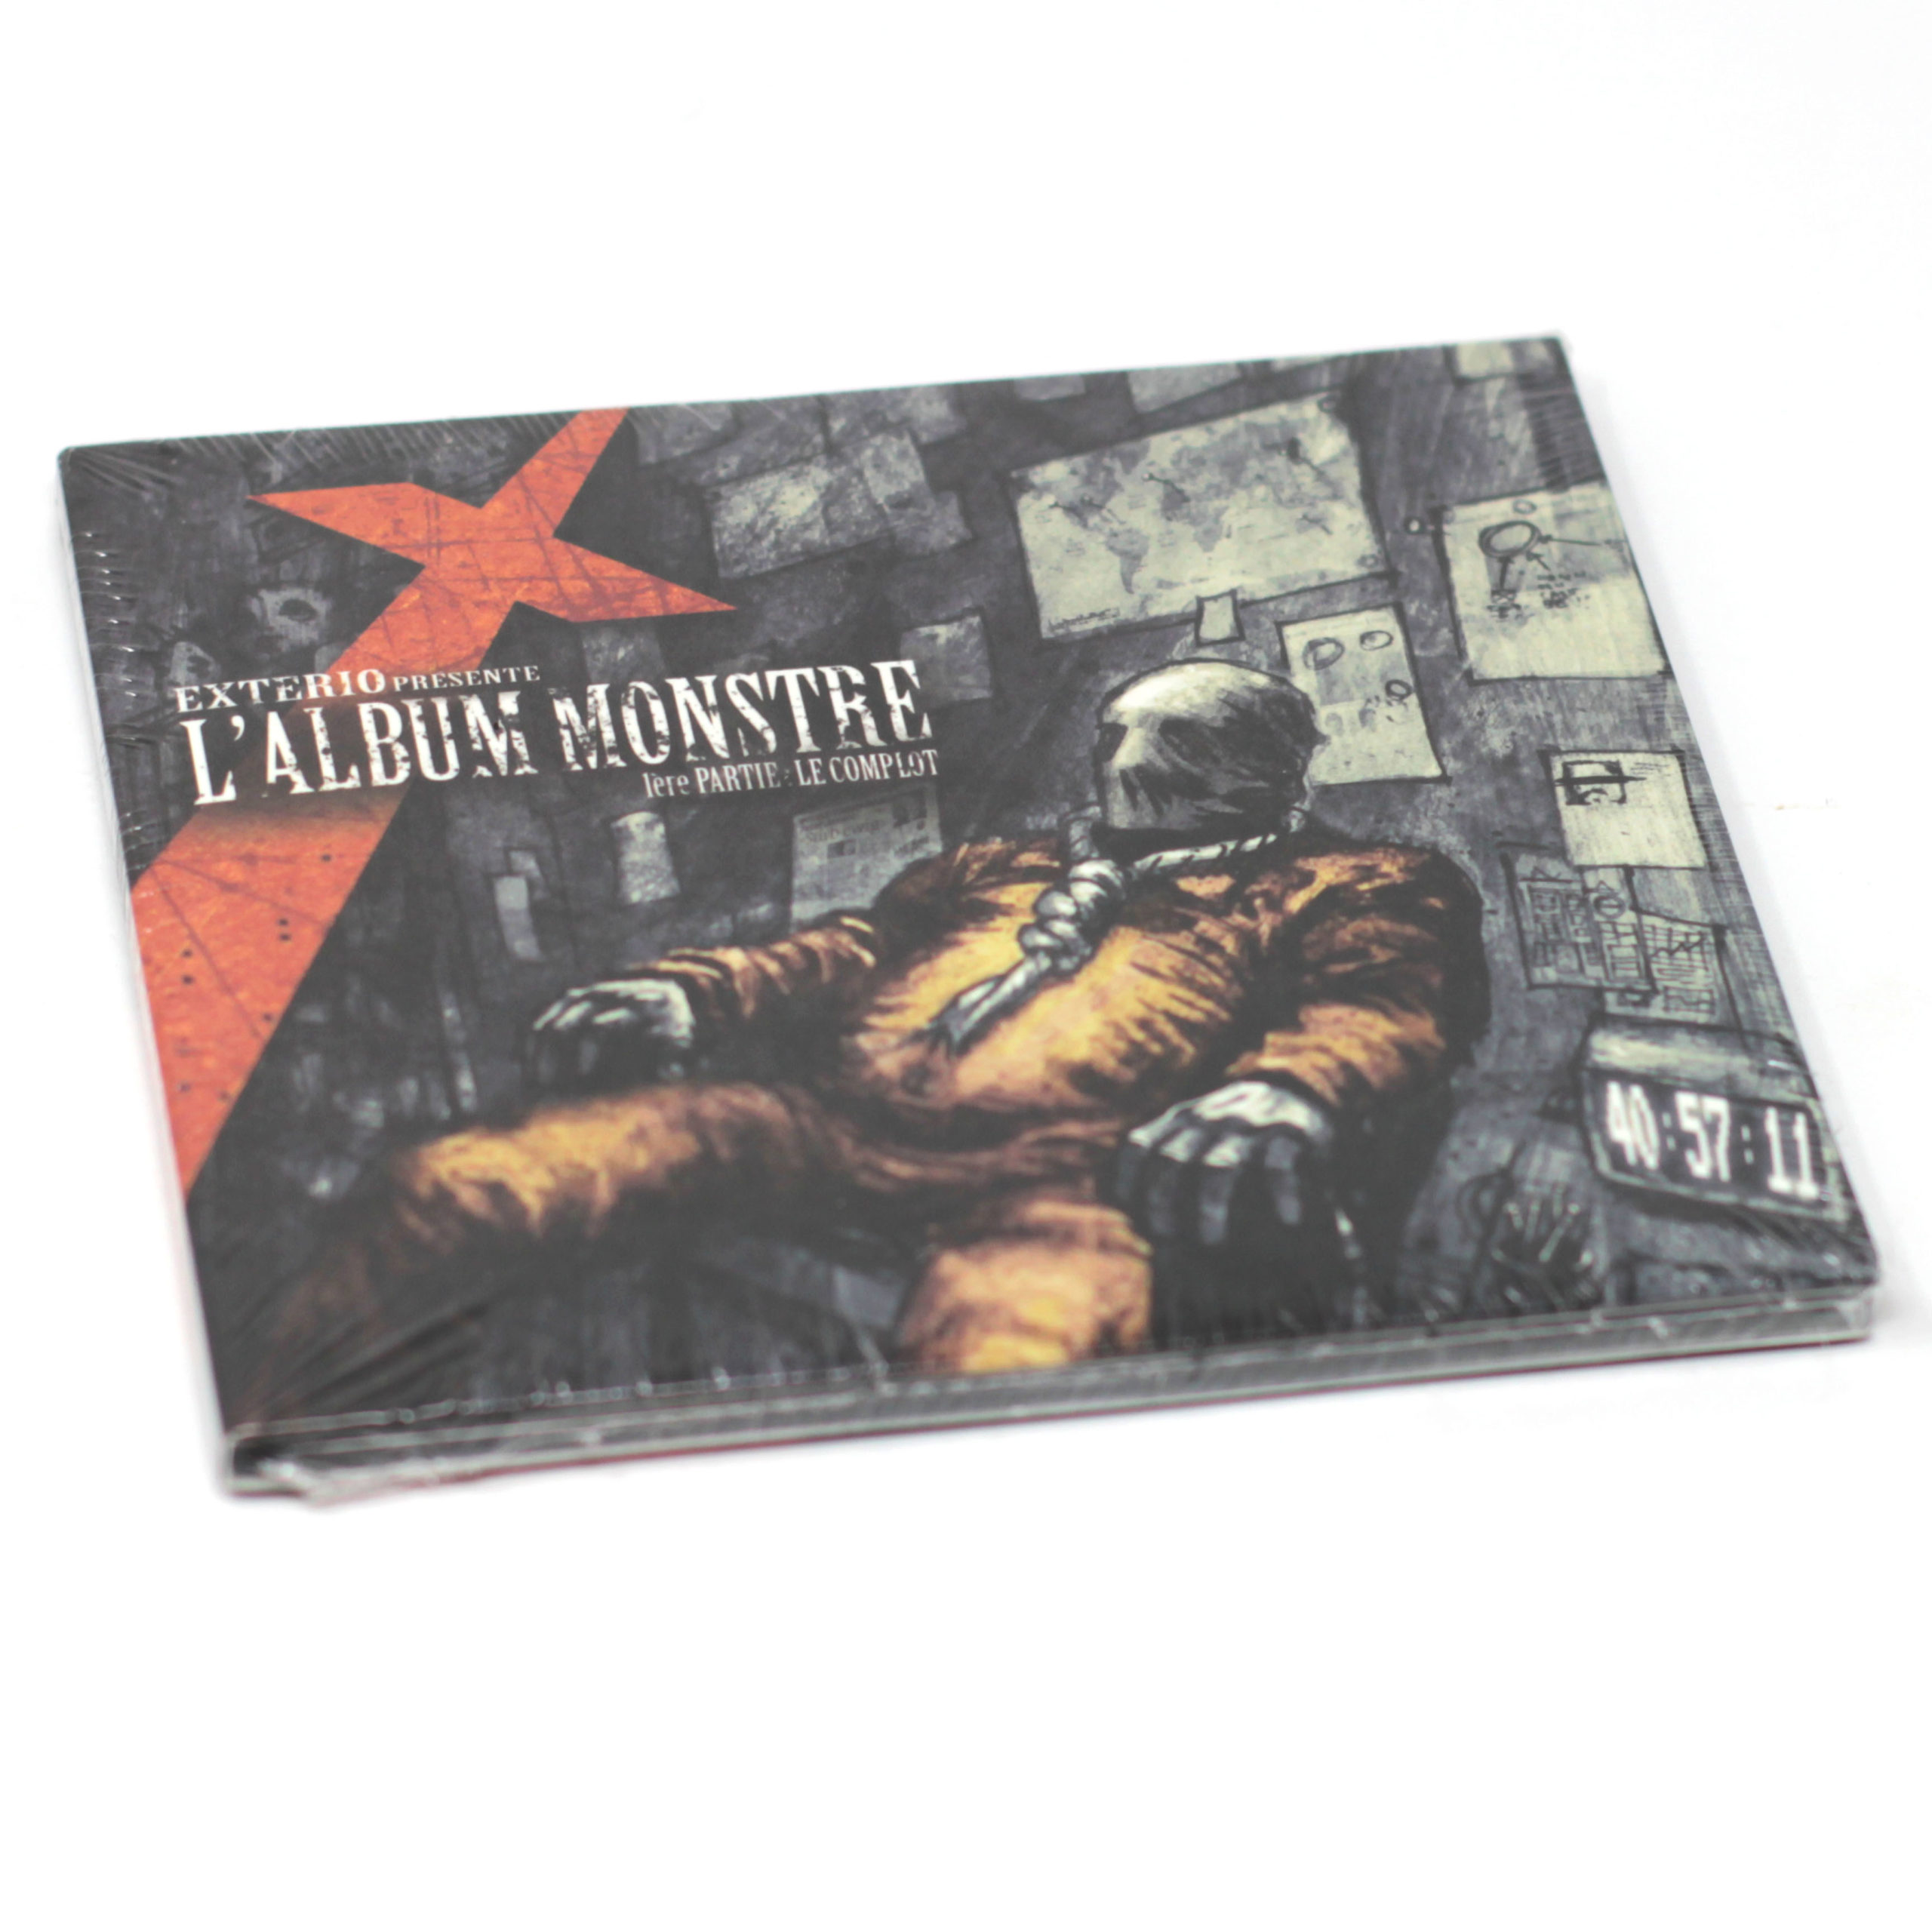 Exterio “L’album MONSTRE: 1ÈRE PARTIE – Le Complot” CD